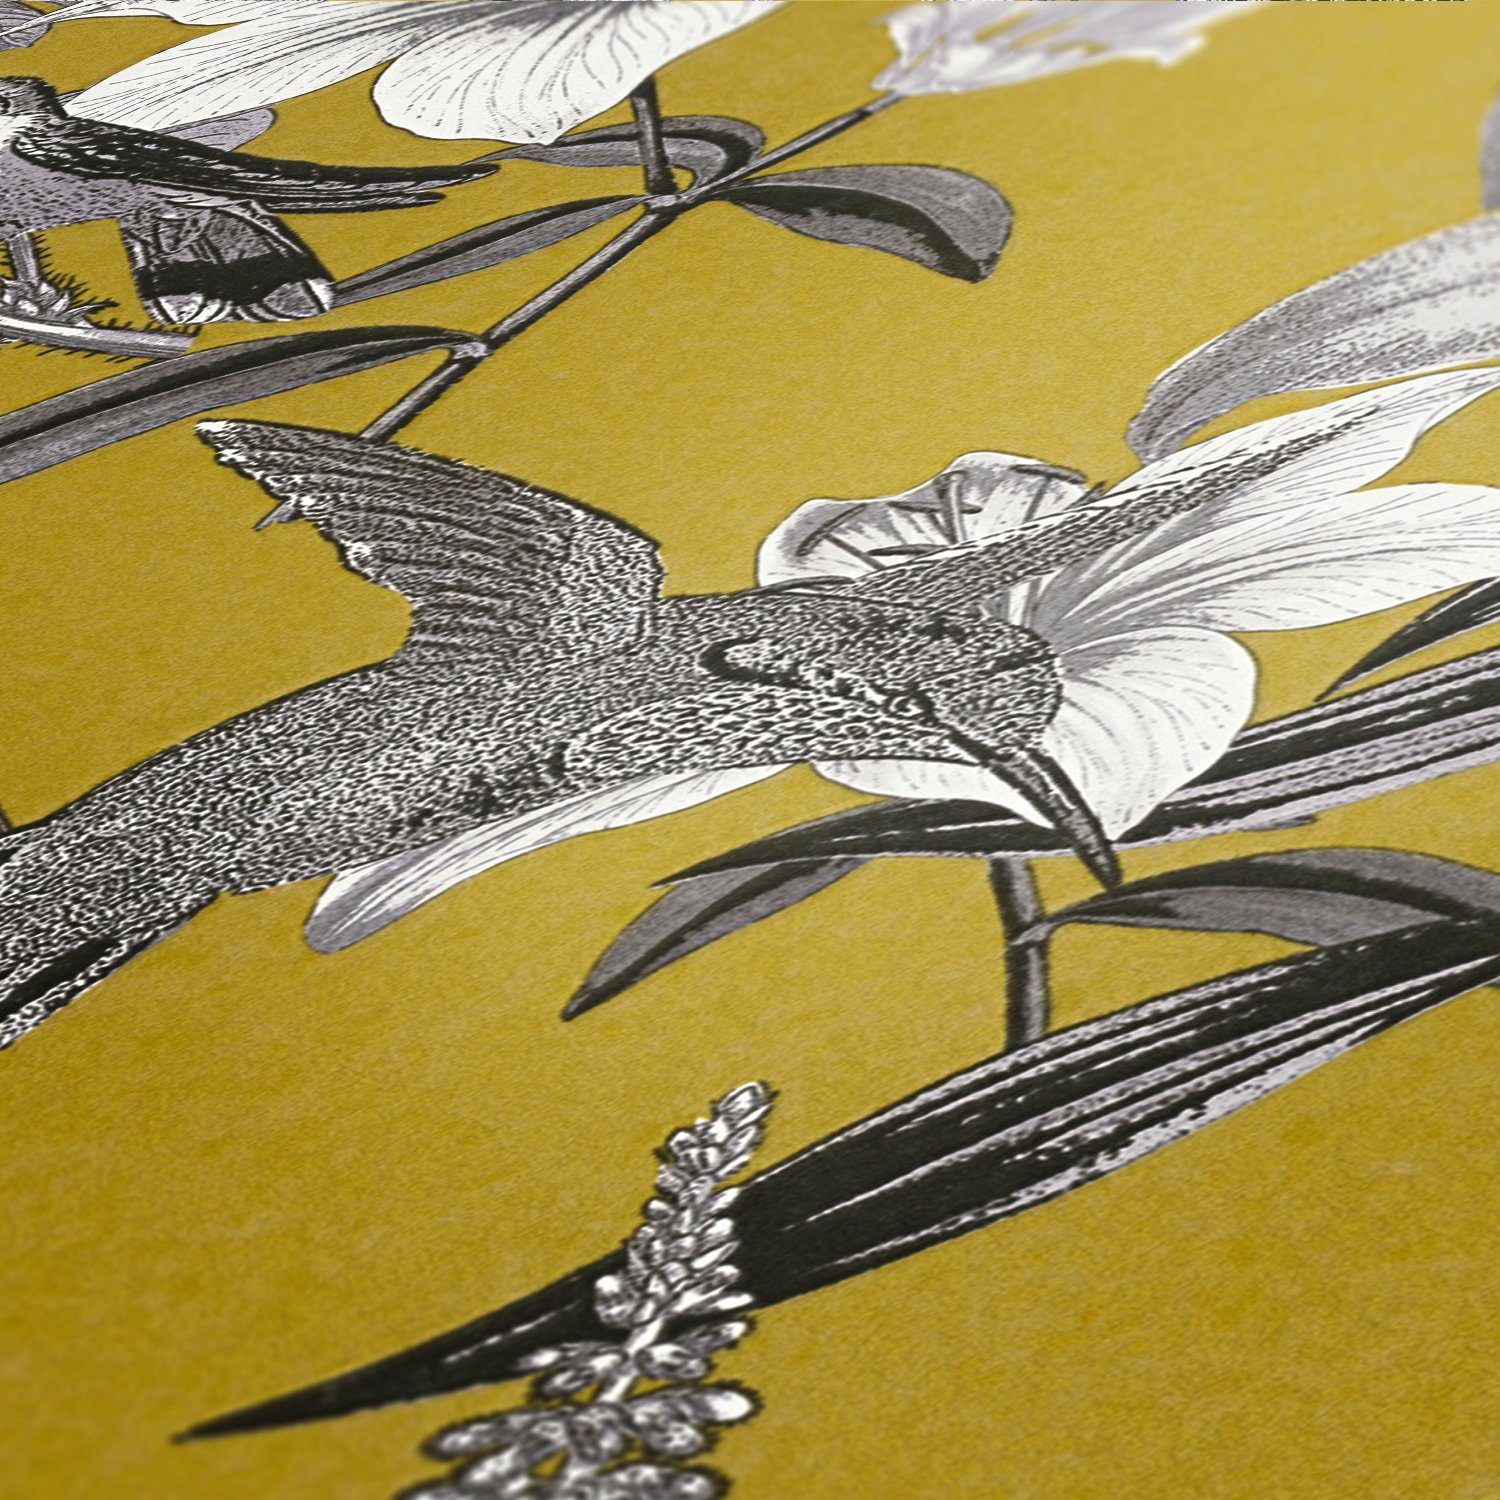 Blumen Création floral, Architects gelb/grau/schwarz Vogeltapete Tapete Paper tropisch, Vliestapete A.S. Chic, Jungle glatt, botanisch,